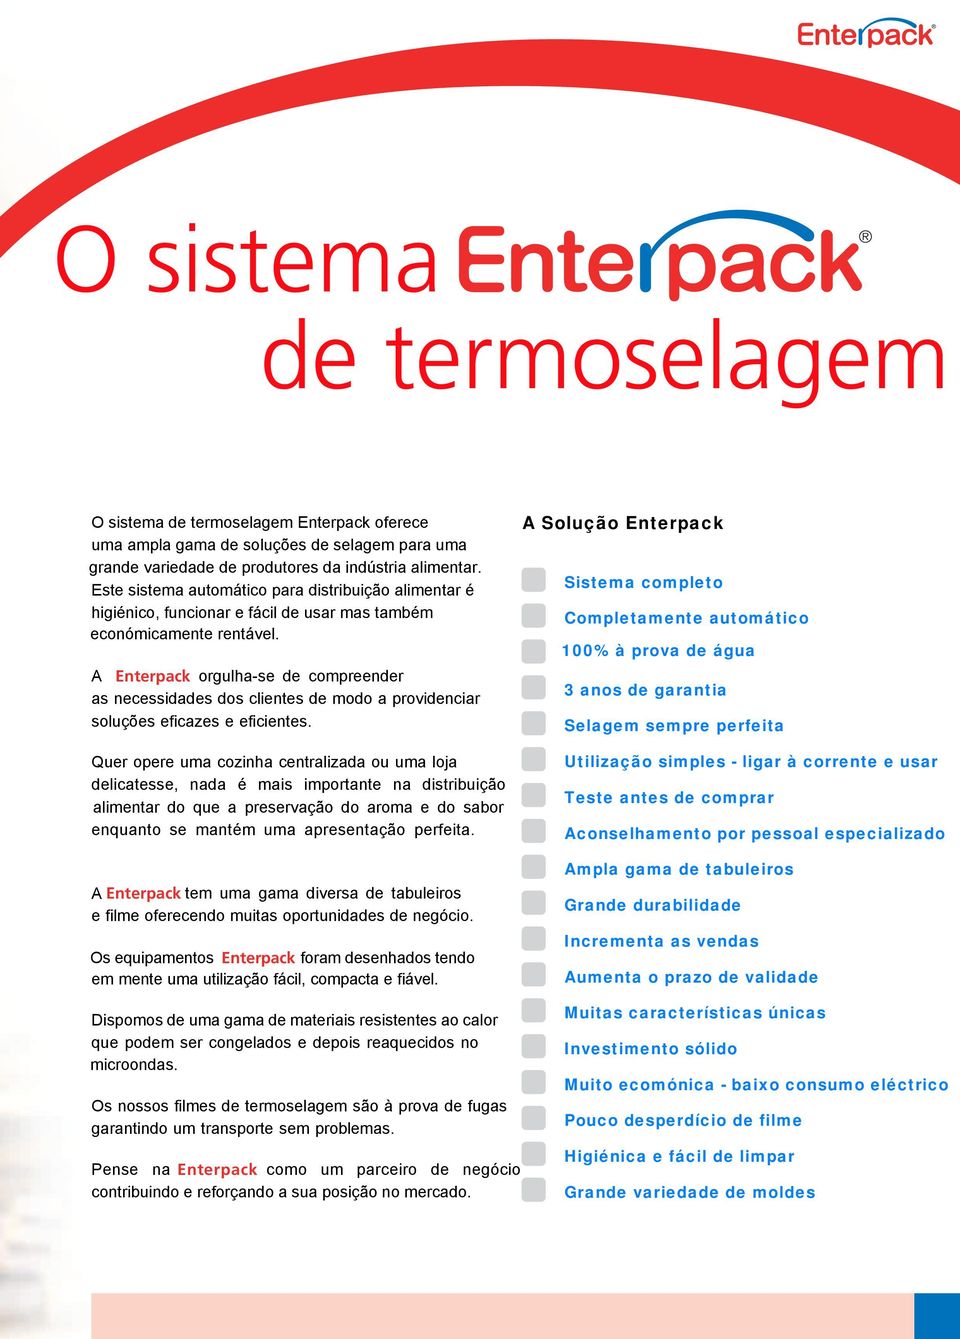 A Enterpack orgulha-se de compreender as necessidades dos clientes de modo a providenciar soluções eficazes e eficientes.